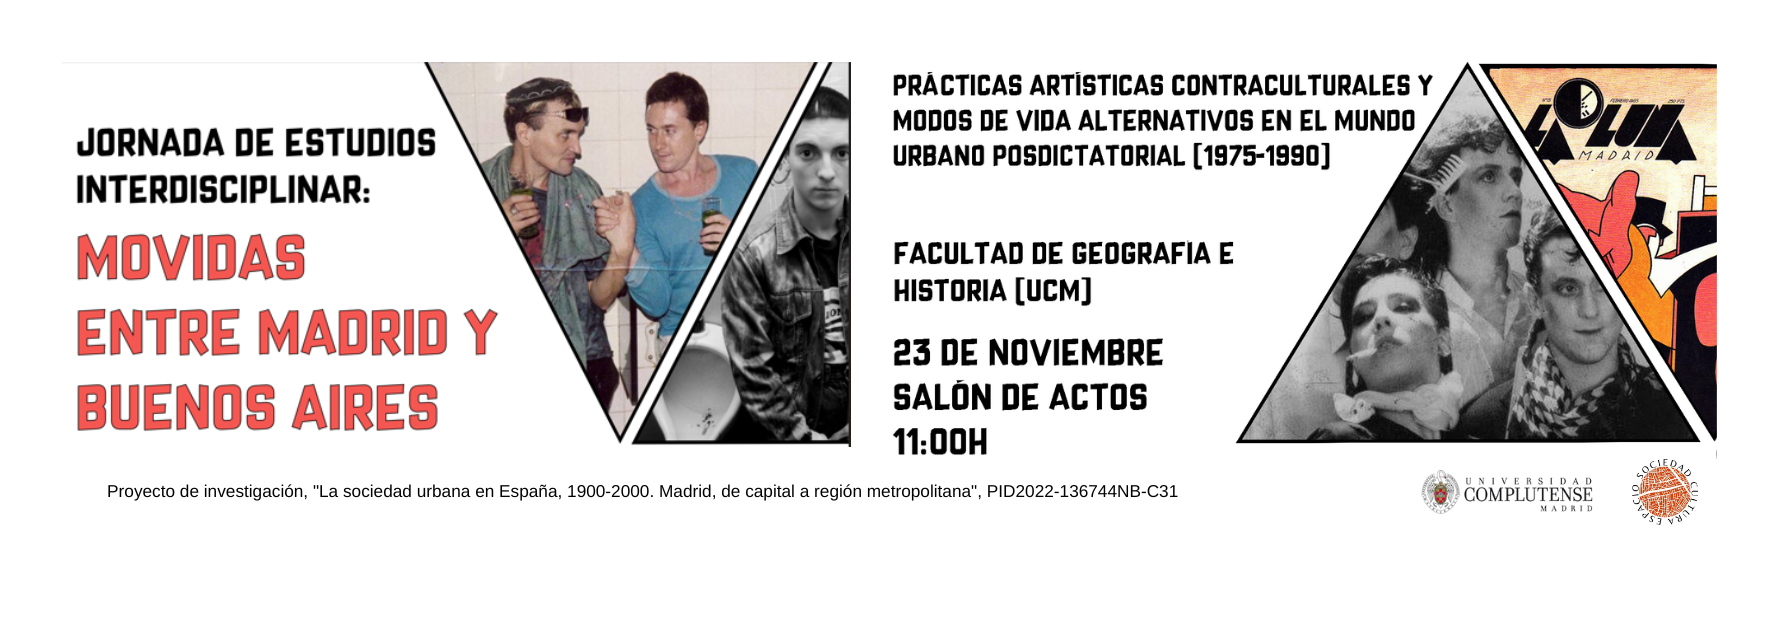 El 23 de noviembre tengrá lugar la jornada de estudios interdisciplinar: Movidas entre Madrid y Buenos Aires. Prácticas artísticas contraculturales y modos de vida alternativos en el mundo urbano posdictatorial (1975-1990)